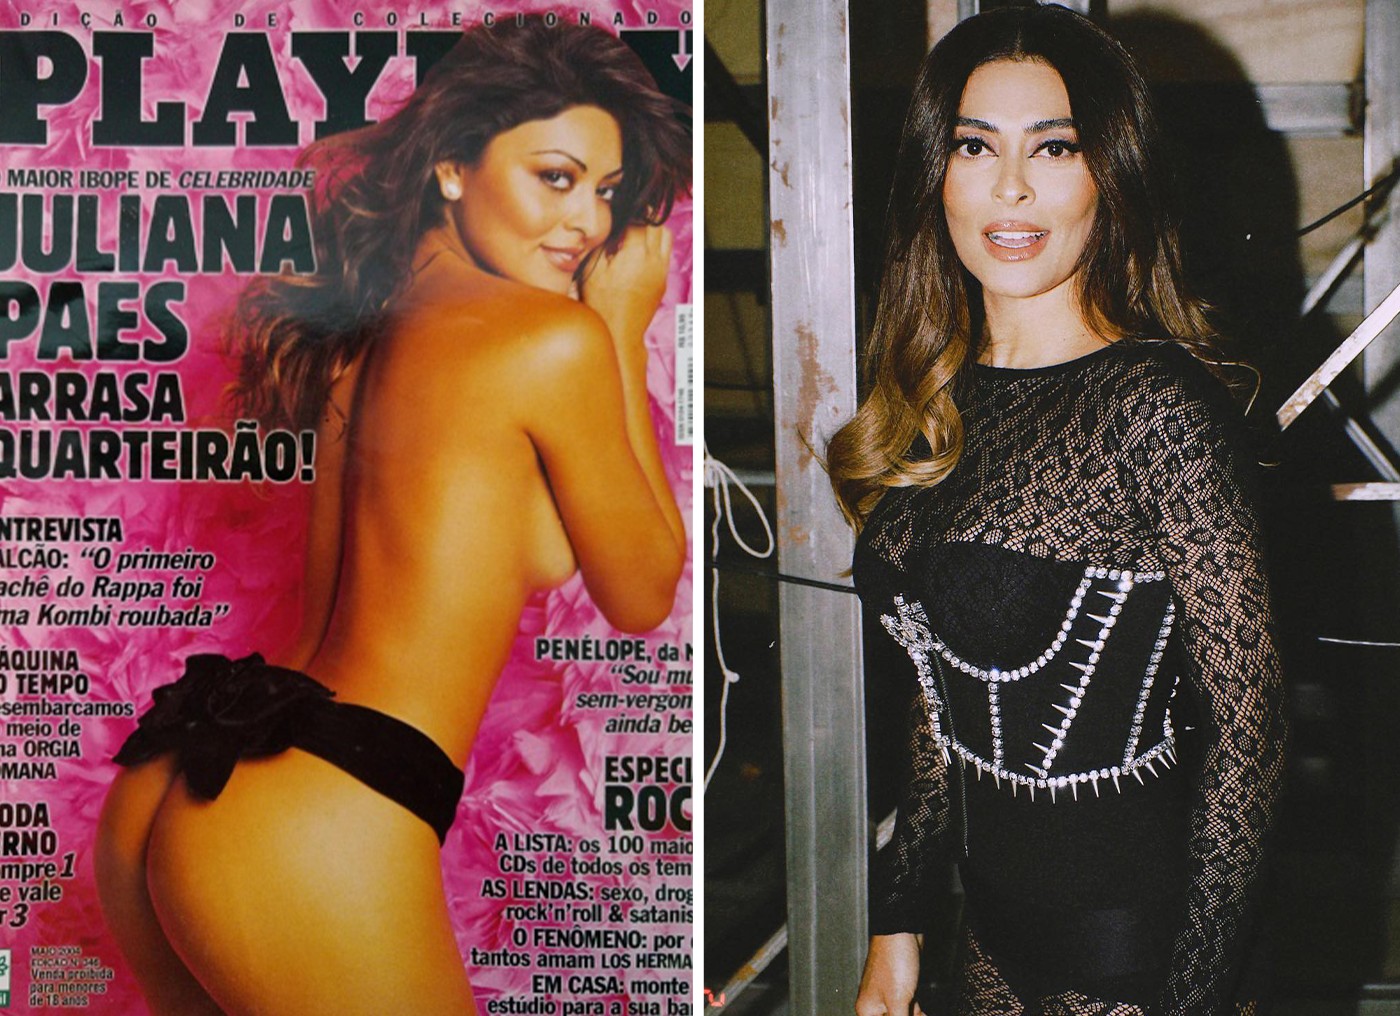 Juliana Paes quando capa da 'Playboy' e atualmente — Foto: Divulgação/Playboy e Reprodução/Instagram/@itamazzutti/